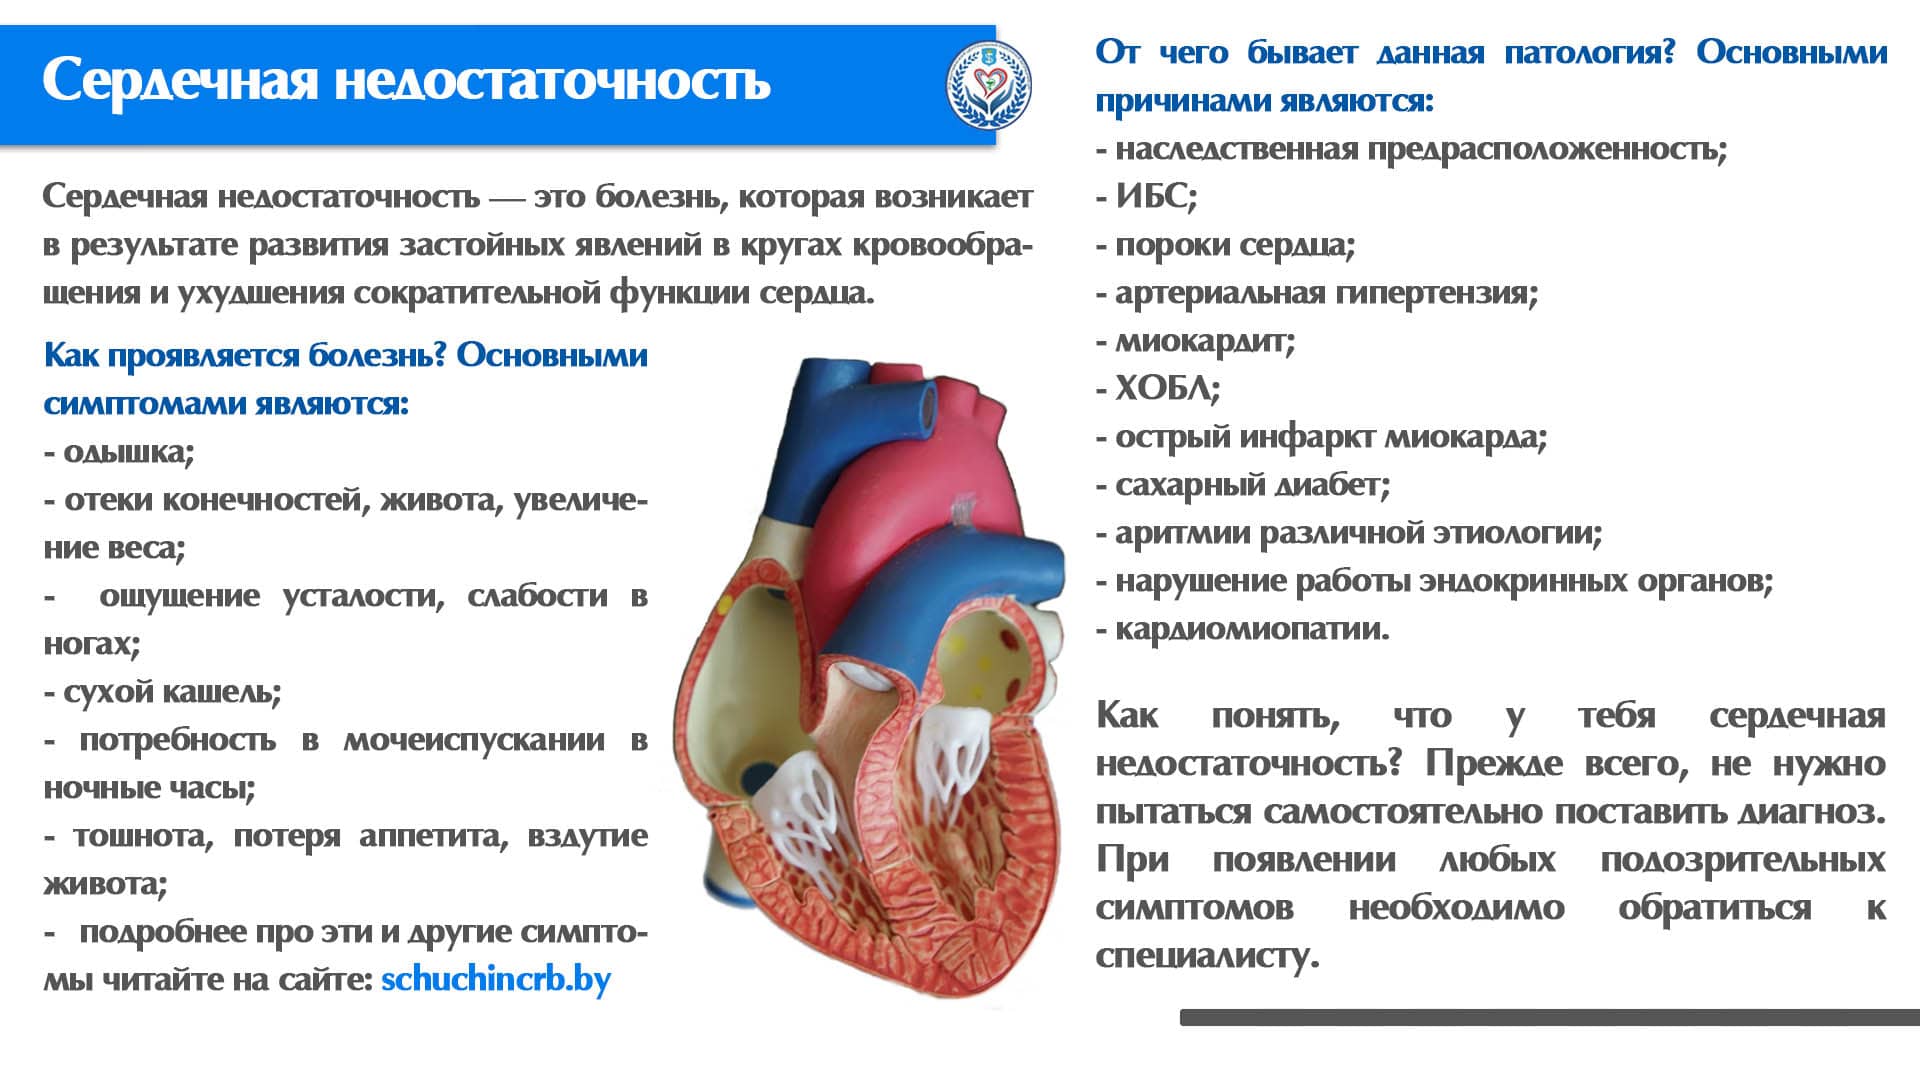 Учреждение здравоохранения "Щучинская центральная районная больница" - Сердечная  недостаточность